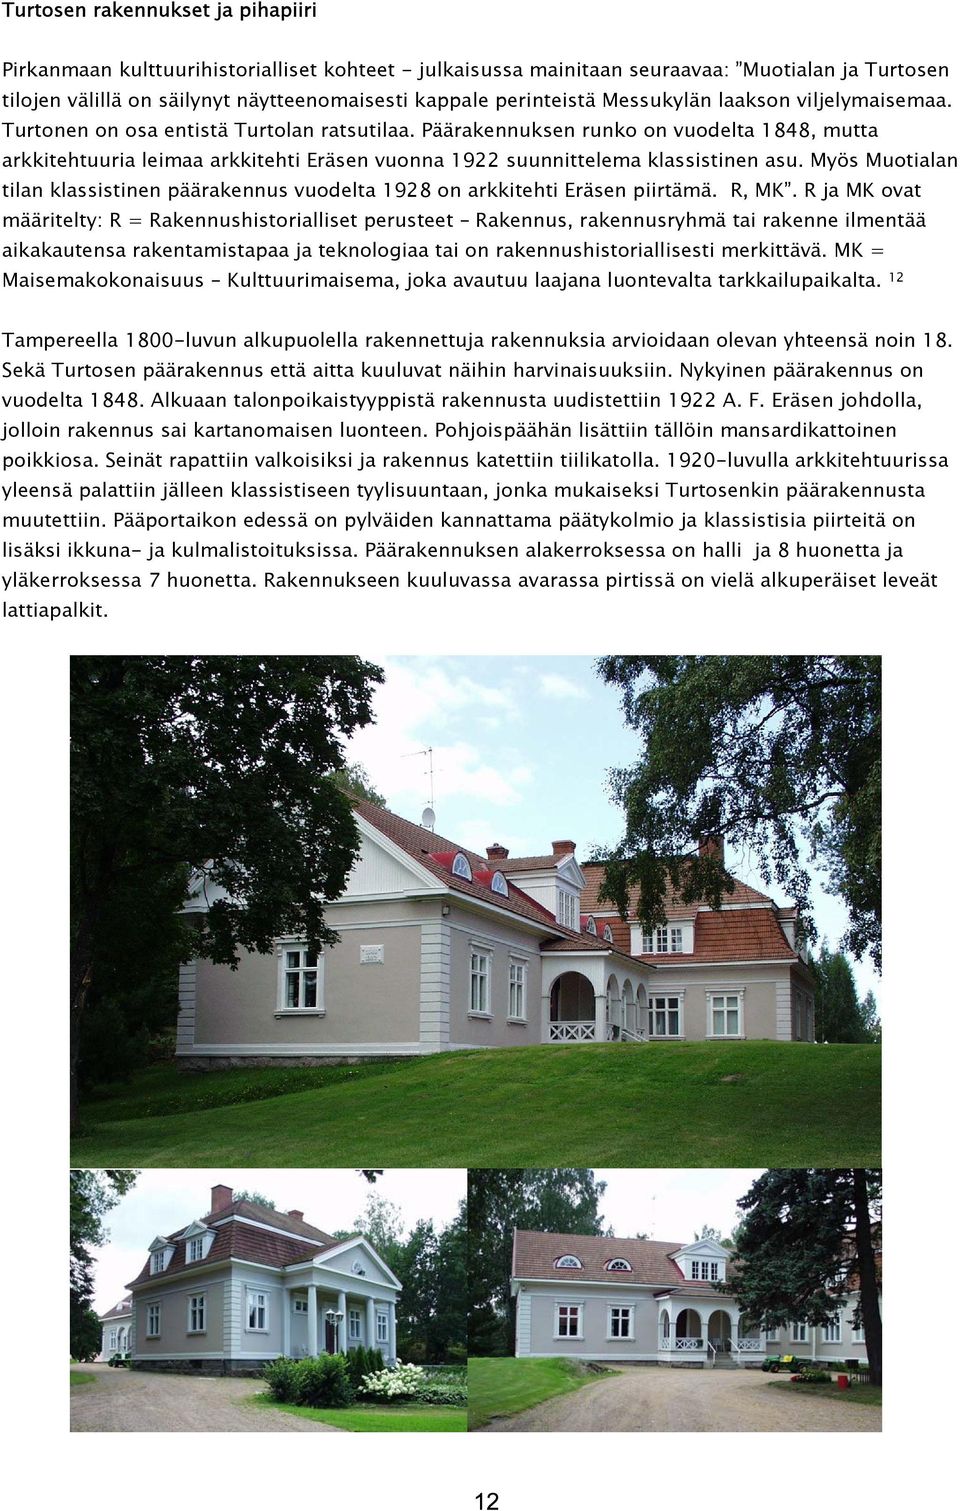 Päärakennuksen runko on vuodelta 1848, mutta arkkitehtuuria leimaa arkkitehti Eräsen vuonna 1922 suunnittelema klassistinen asu.